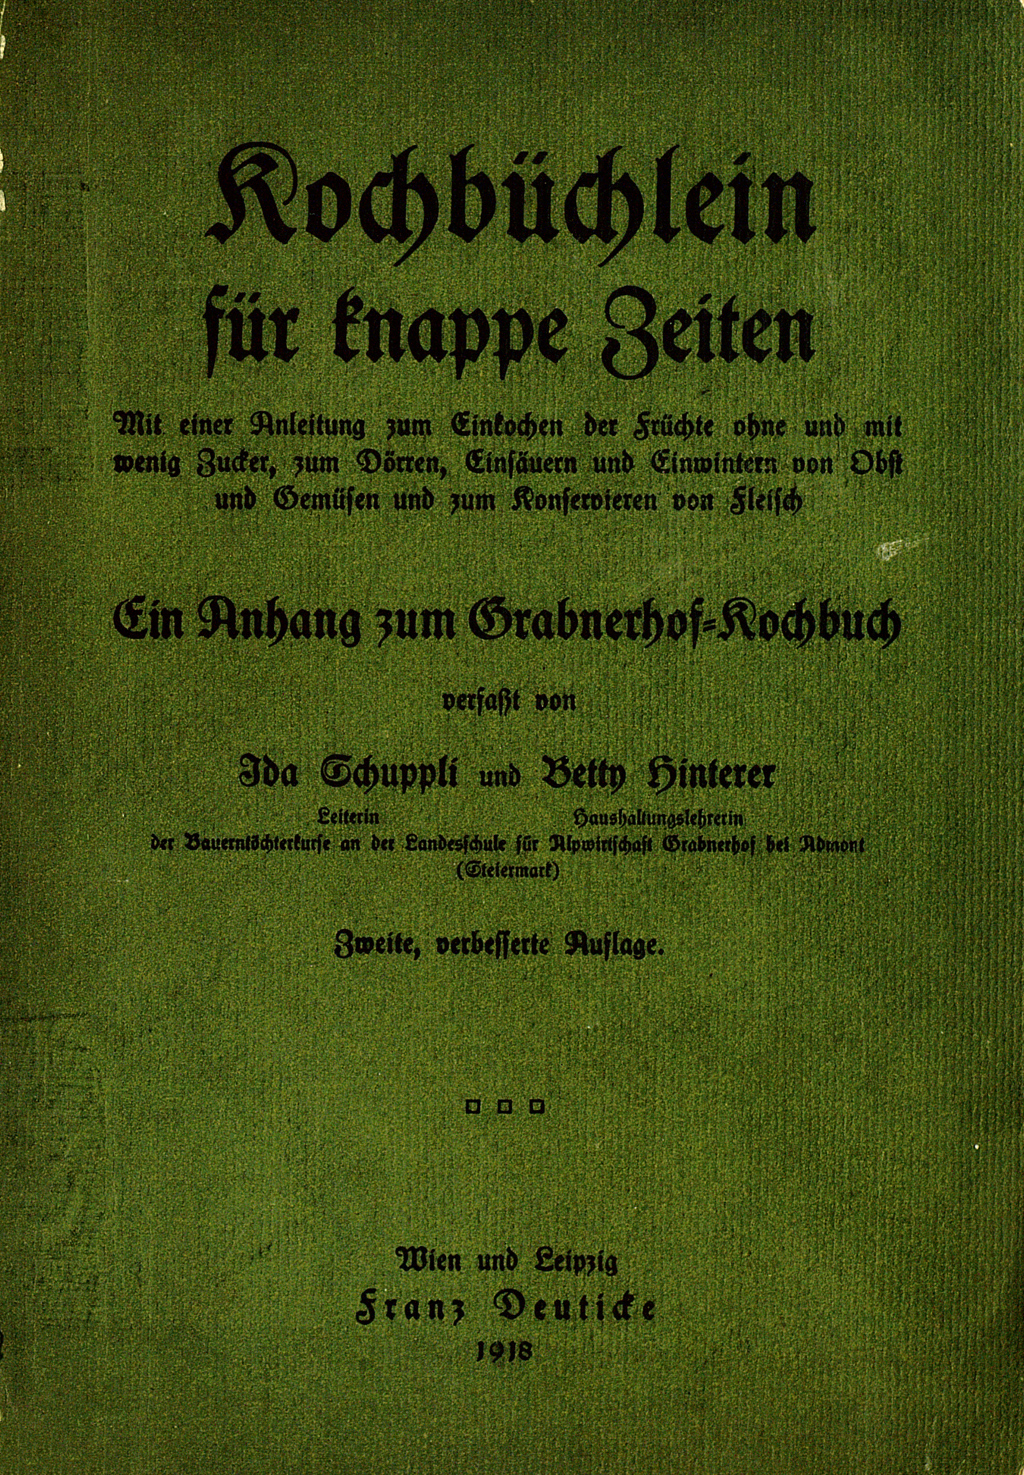 Grüner Buchdeckel mit gebrochener Schrift von "Kochbüchlein für knappe Zeiten."